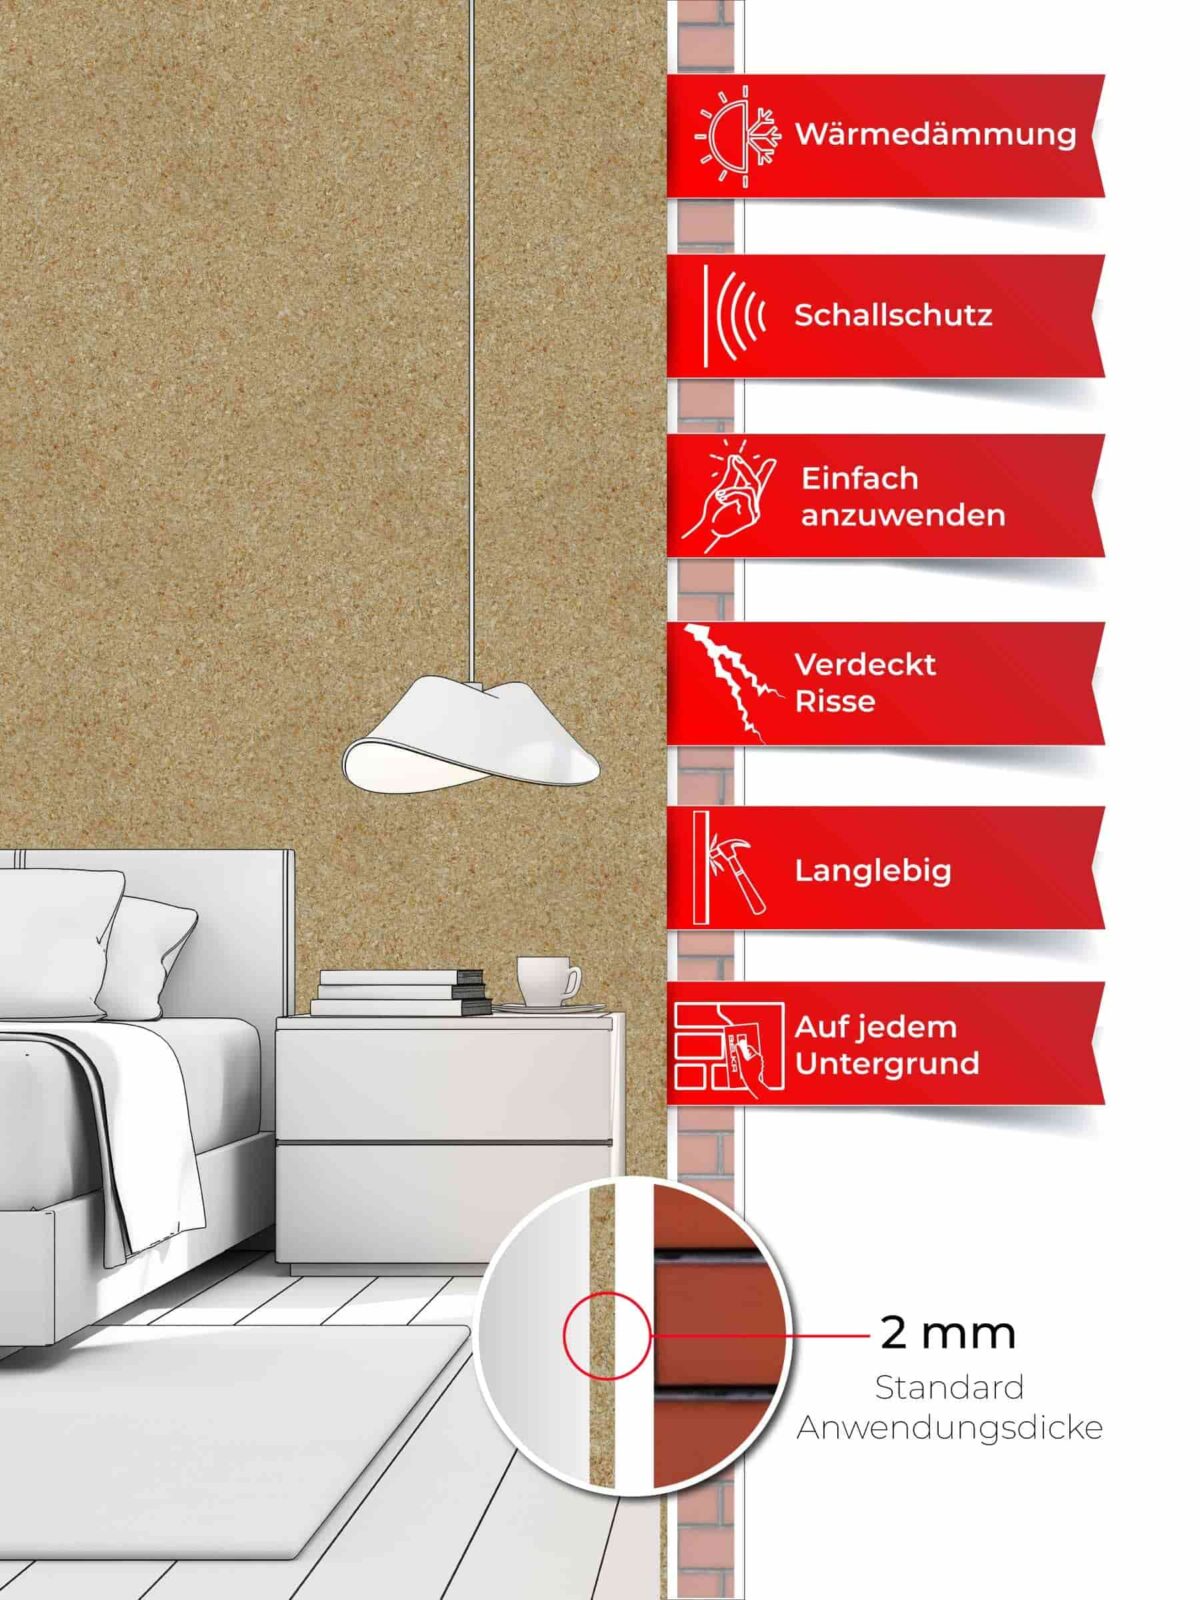 Ein Schlafzimmer, dessen Wände mit Belka Tapete Beige tapeziert sind. Produktmerkmale auf sechs roten Etiketten.